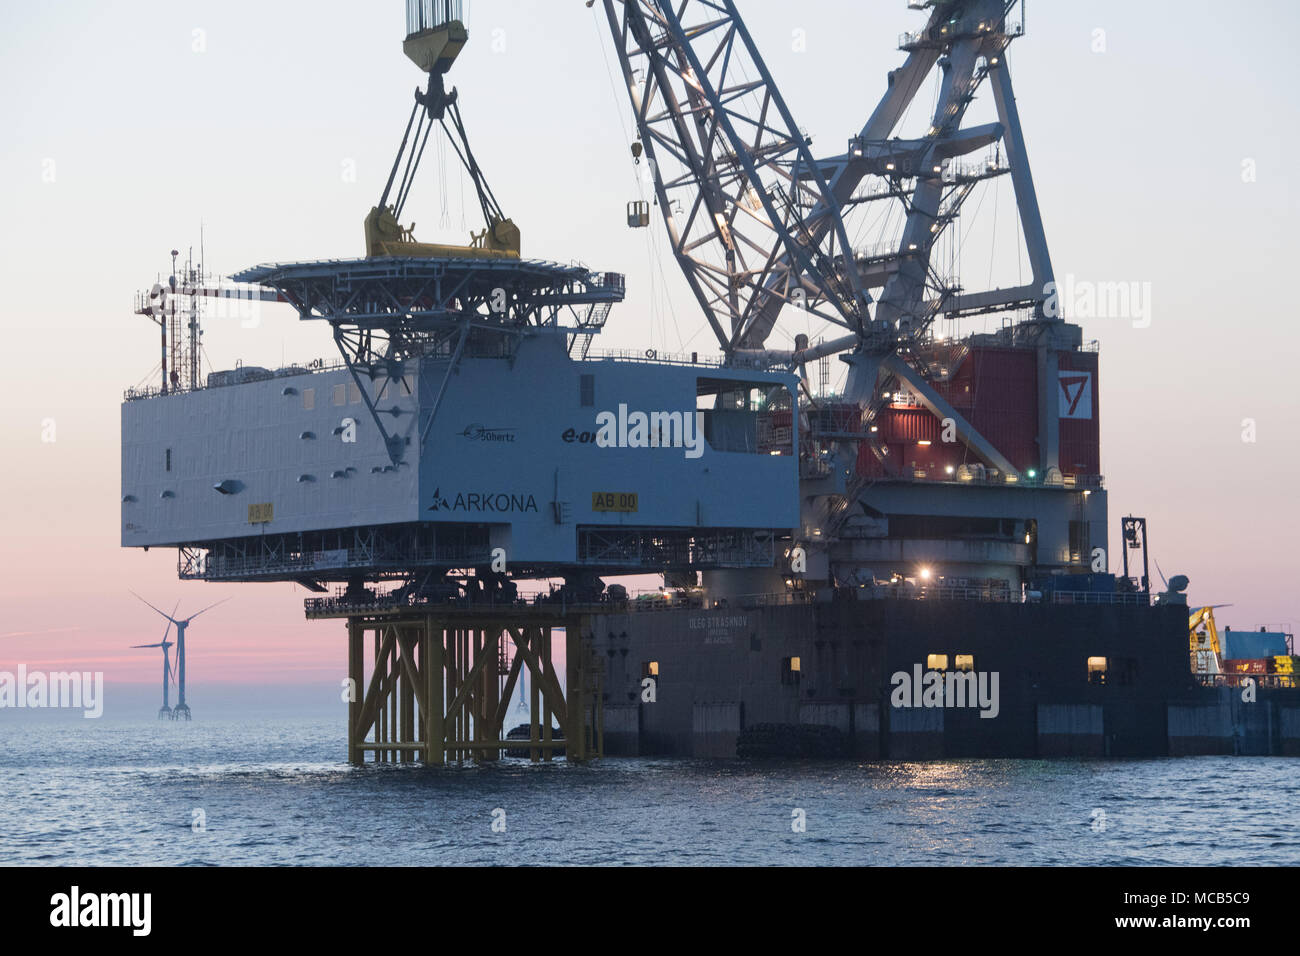 08 de abril de 2018, Alemania, Sassnitz: 4.000 toneladas de pesaje plataforma transformador está montada con la ayuda de una grúa buque 'Oleg Strashnov' en el parque eólico marino "Arkona' cerca de la isla de Ruegen. Parque eólico marino "Arkona" se espera en línea a principios de 2019 ofreciendo 385 megavatios de energía a partir de 60 aerogeneradores. La compañía de energía Eon y la compañía de energía noruega Statoil están invirtiendo alrededor de 1, 2 millones de euros en el proyecto. - Sin cable SERVICIO - Foto: Stefan Sauer/dpa-Zentralbild/dpa Foto de stock